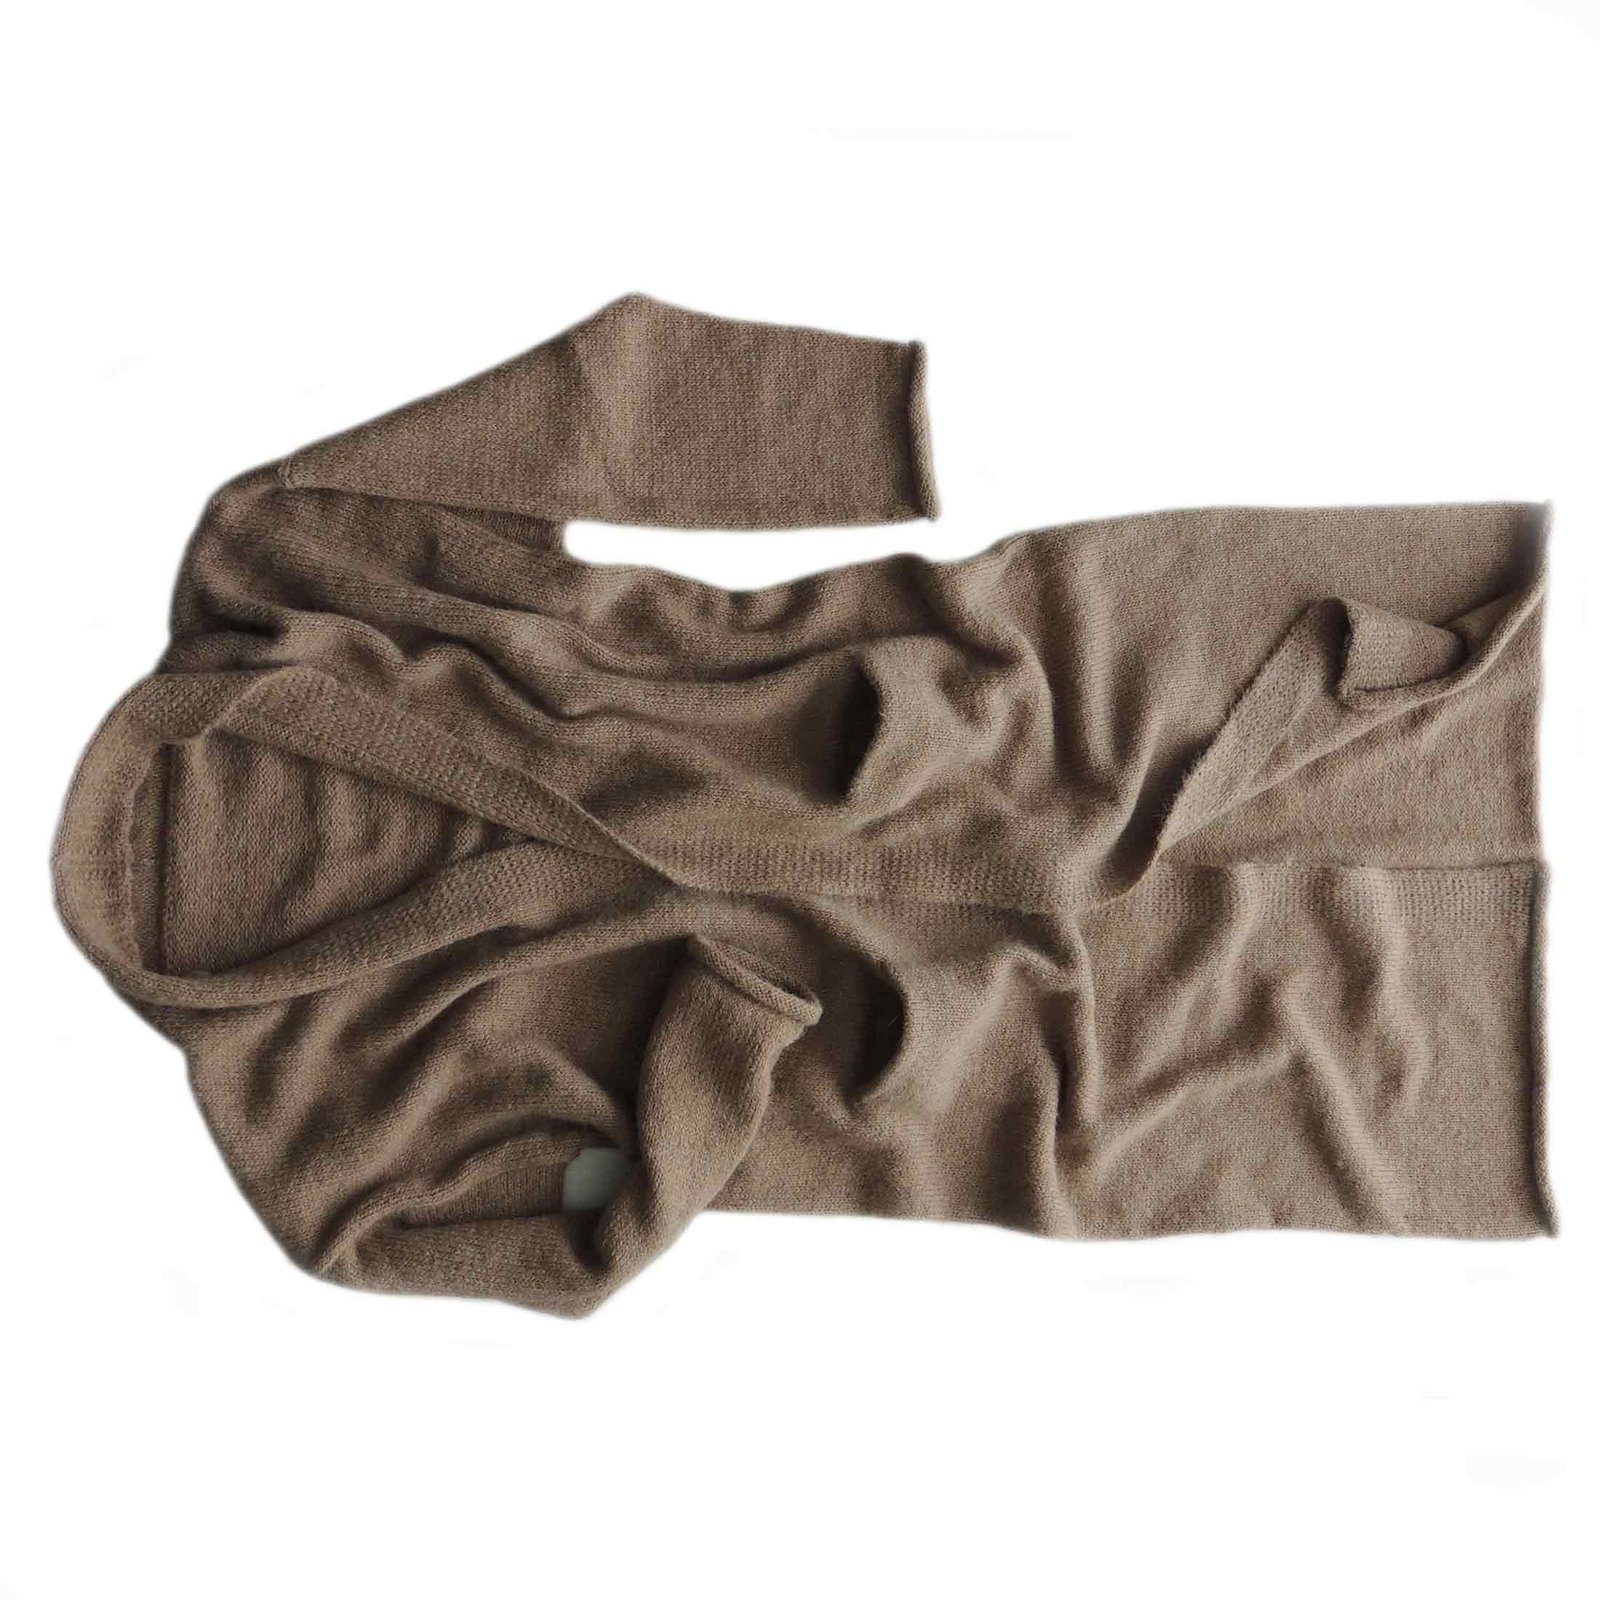 PFL knitwear Long cardigan / coat in luxery soft brushed Suri alpaca blend